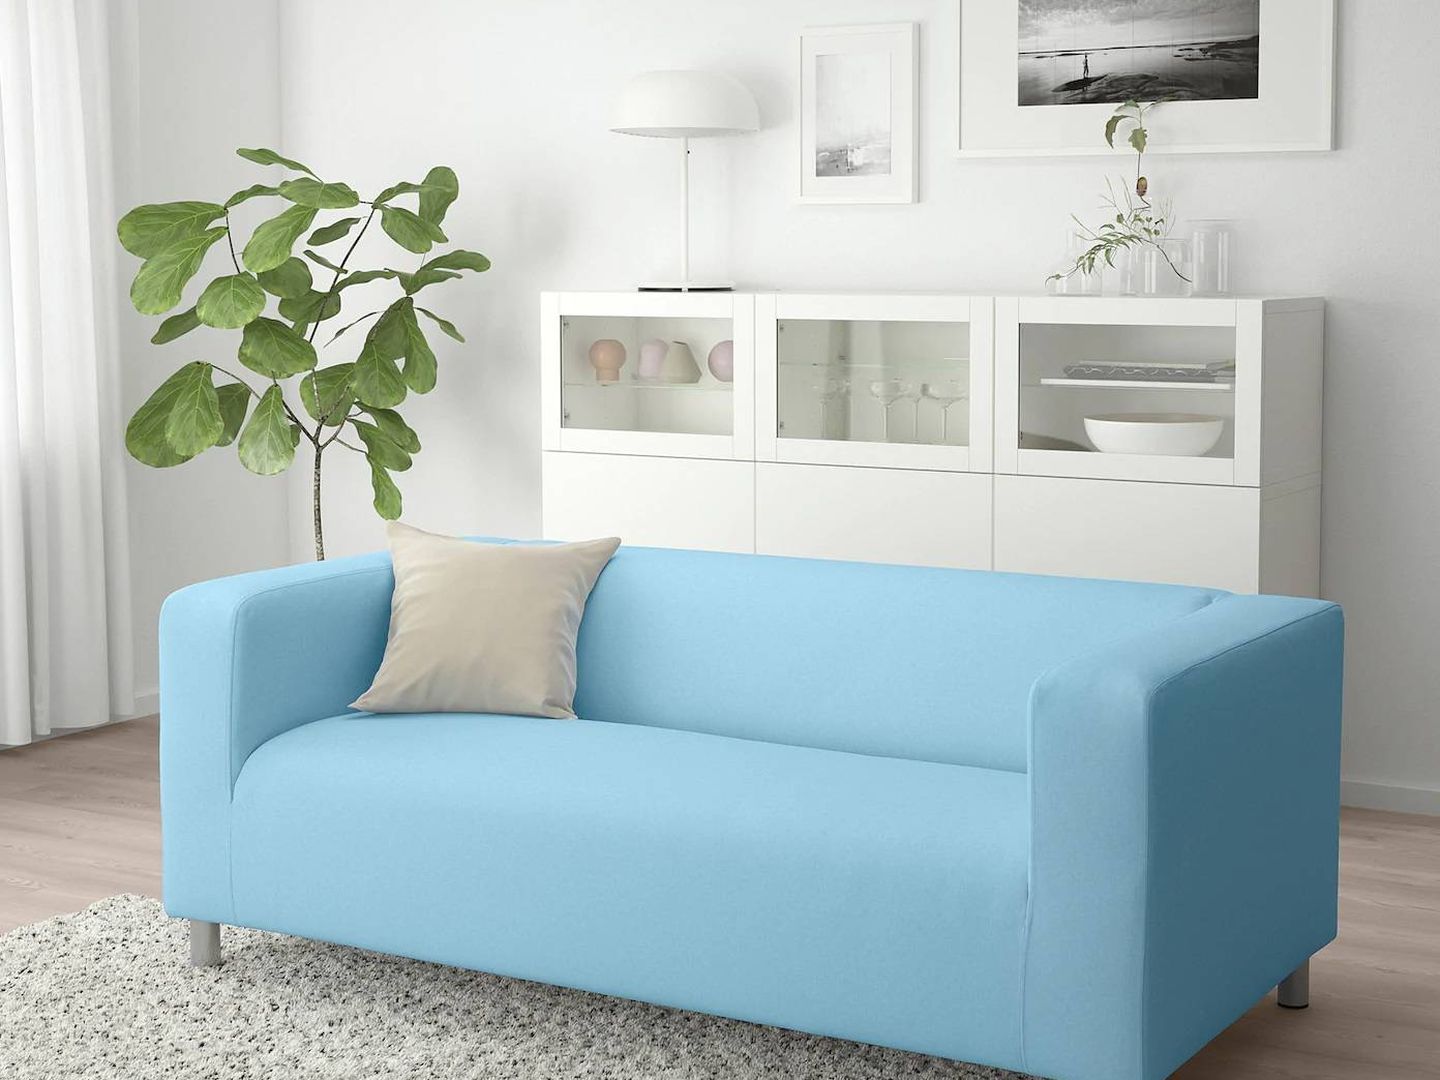 Sofás baratos de Ikea para salones pequeños. (Cortesía)